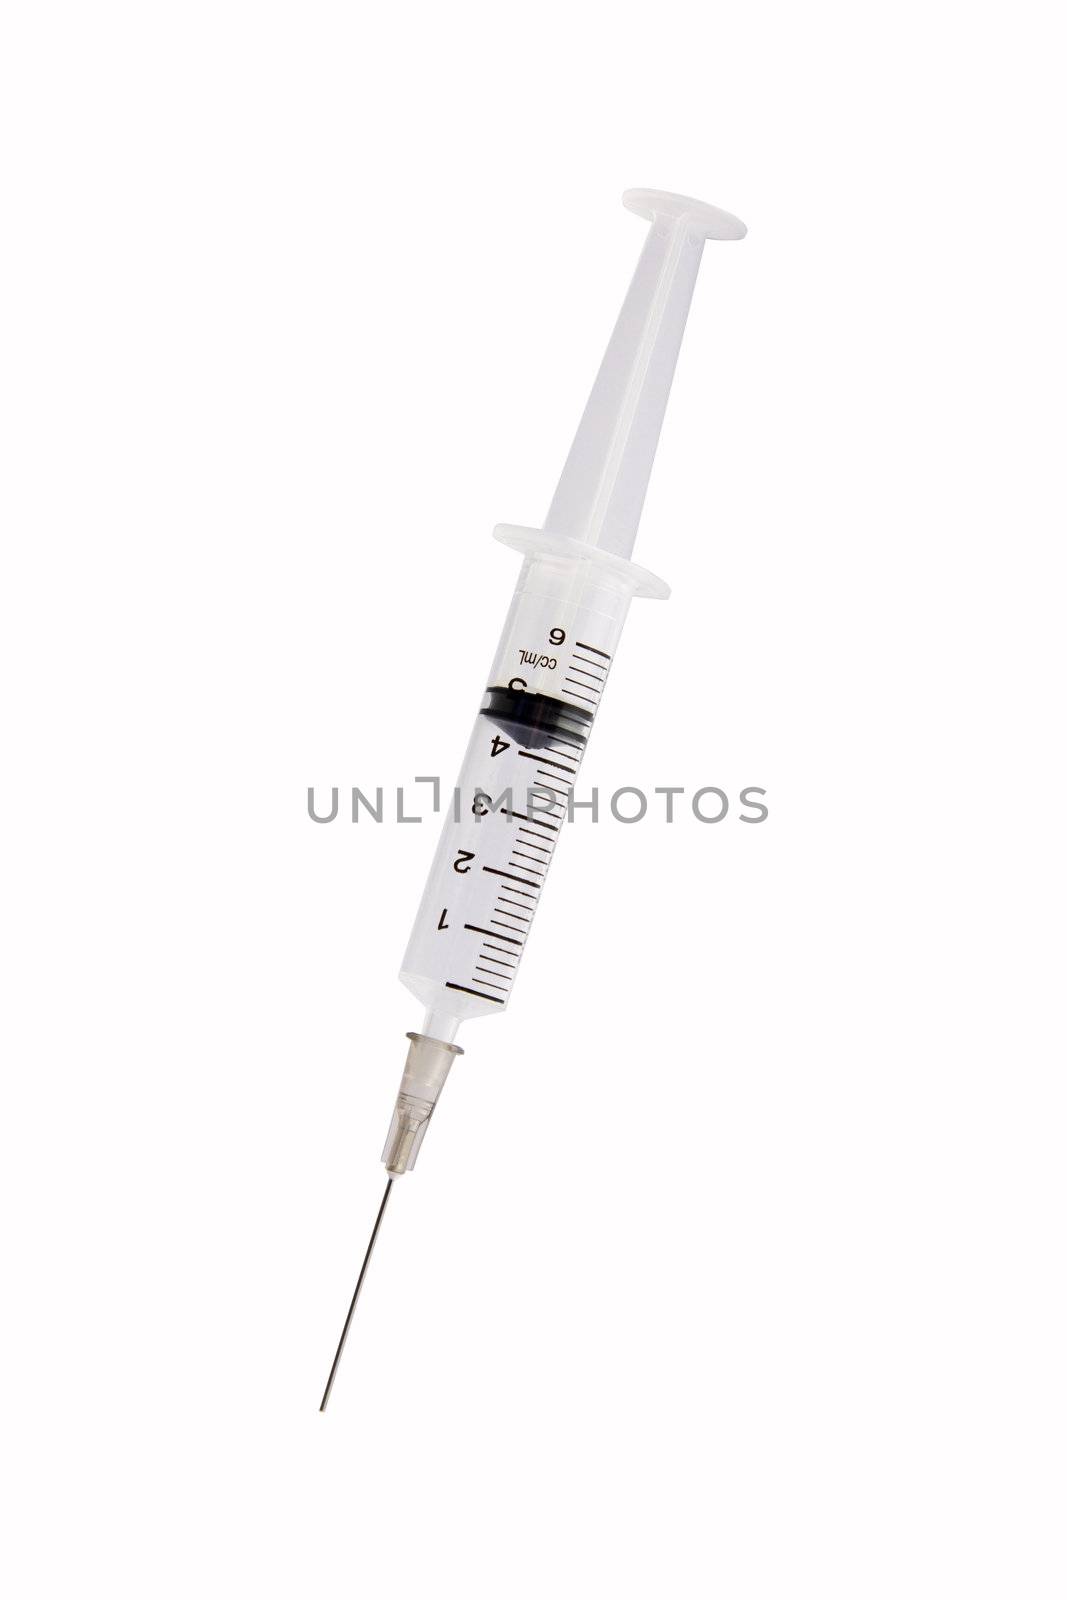 Syringe with needle by Jaykayl